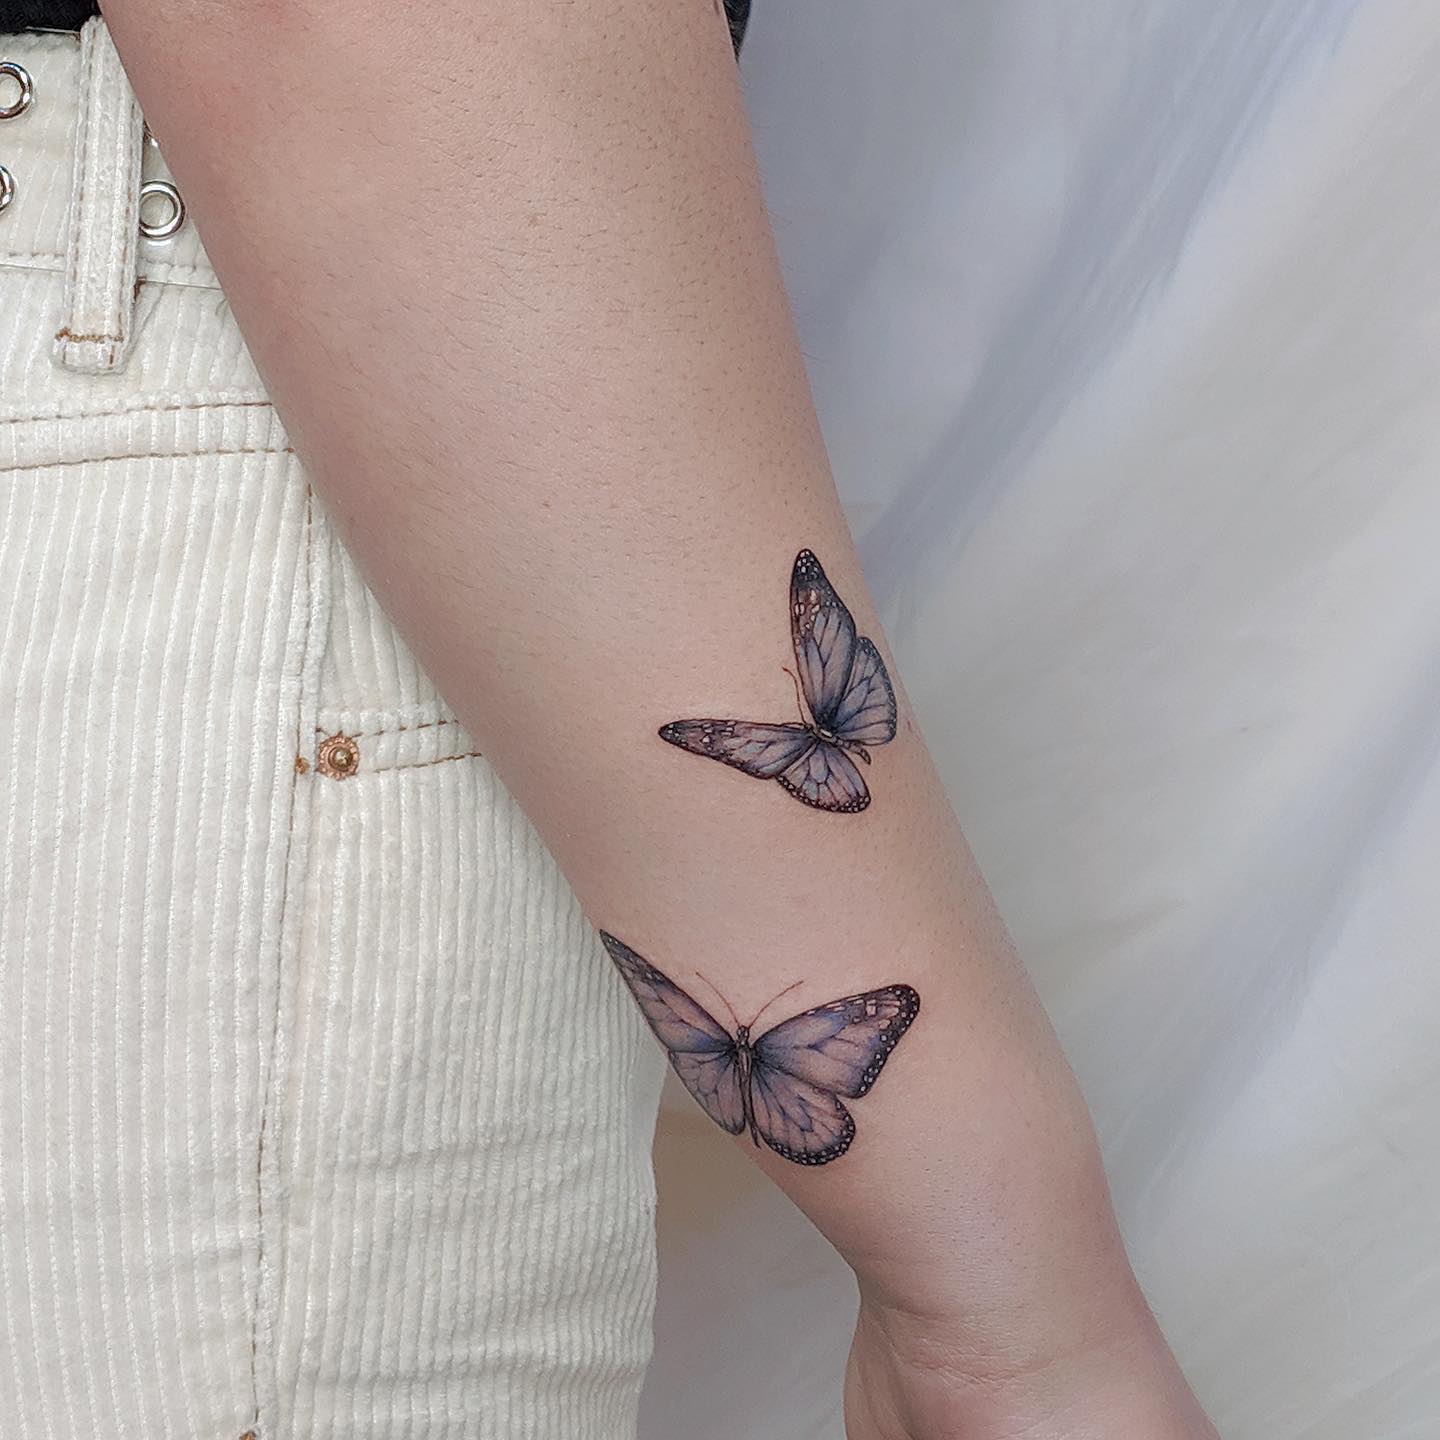 Descubra 130 tatuagens femininas de todos os estilos e tendências para  inspirar a sua próxima tattoo